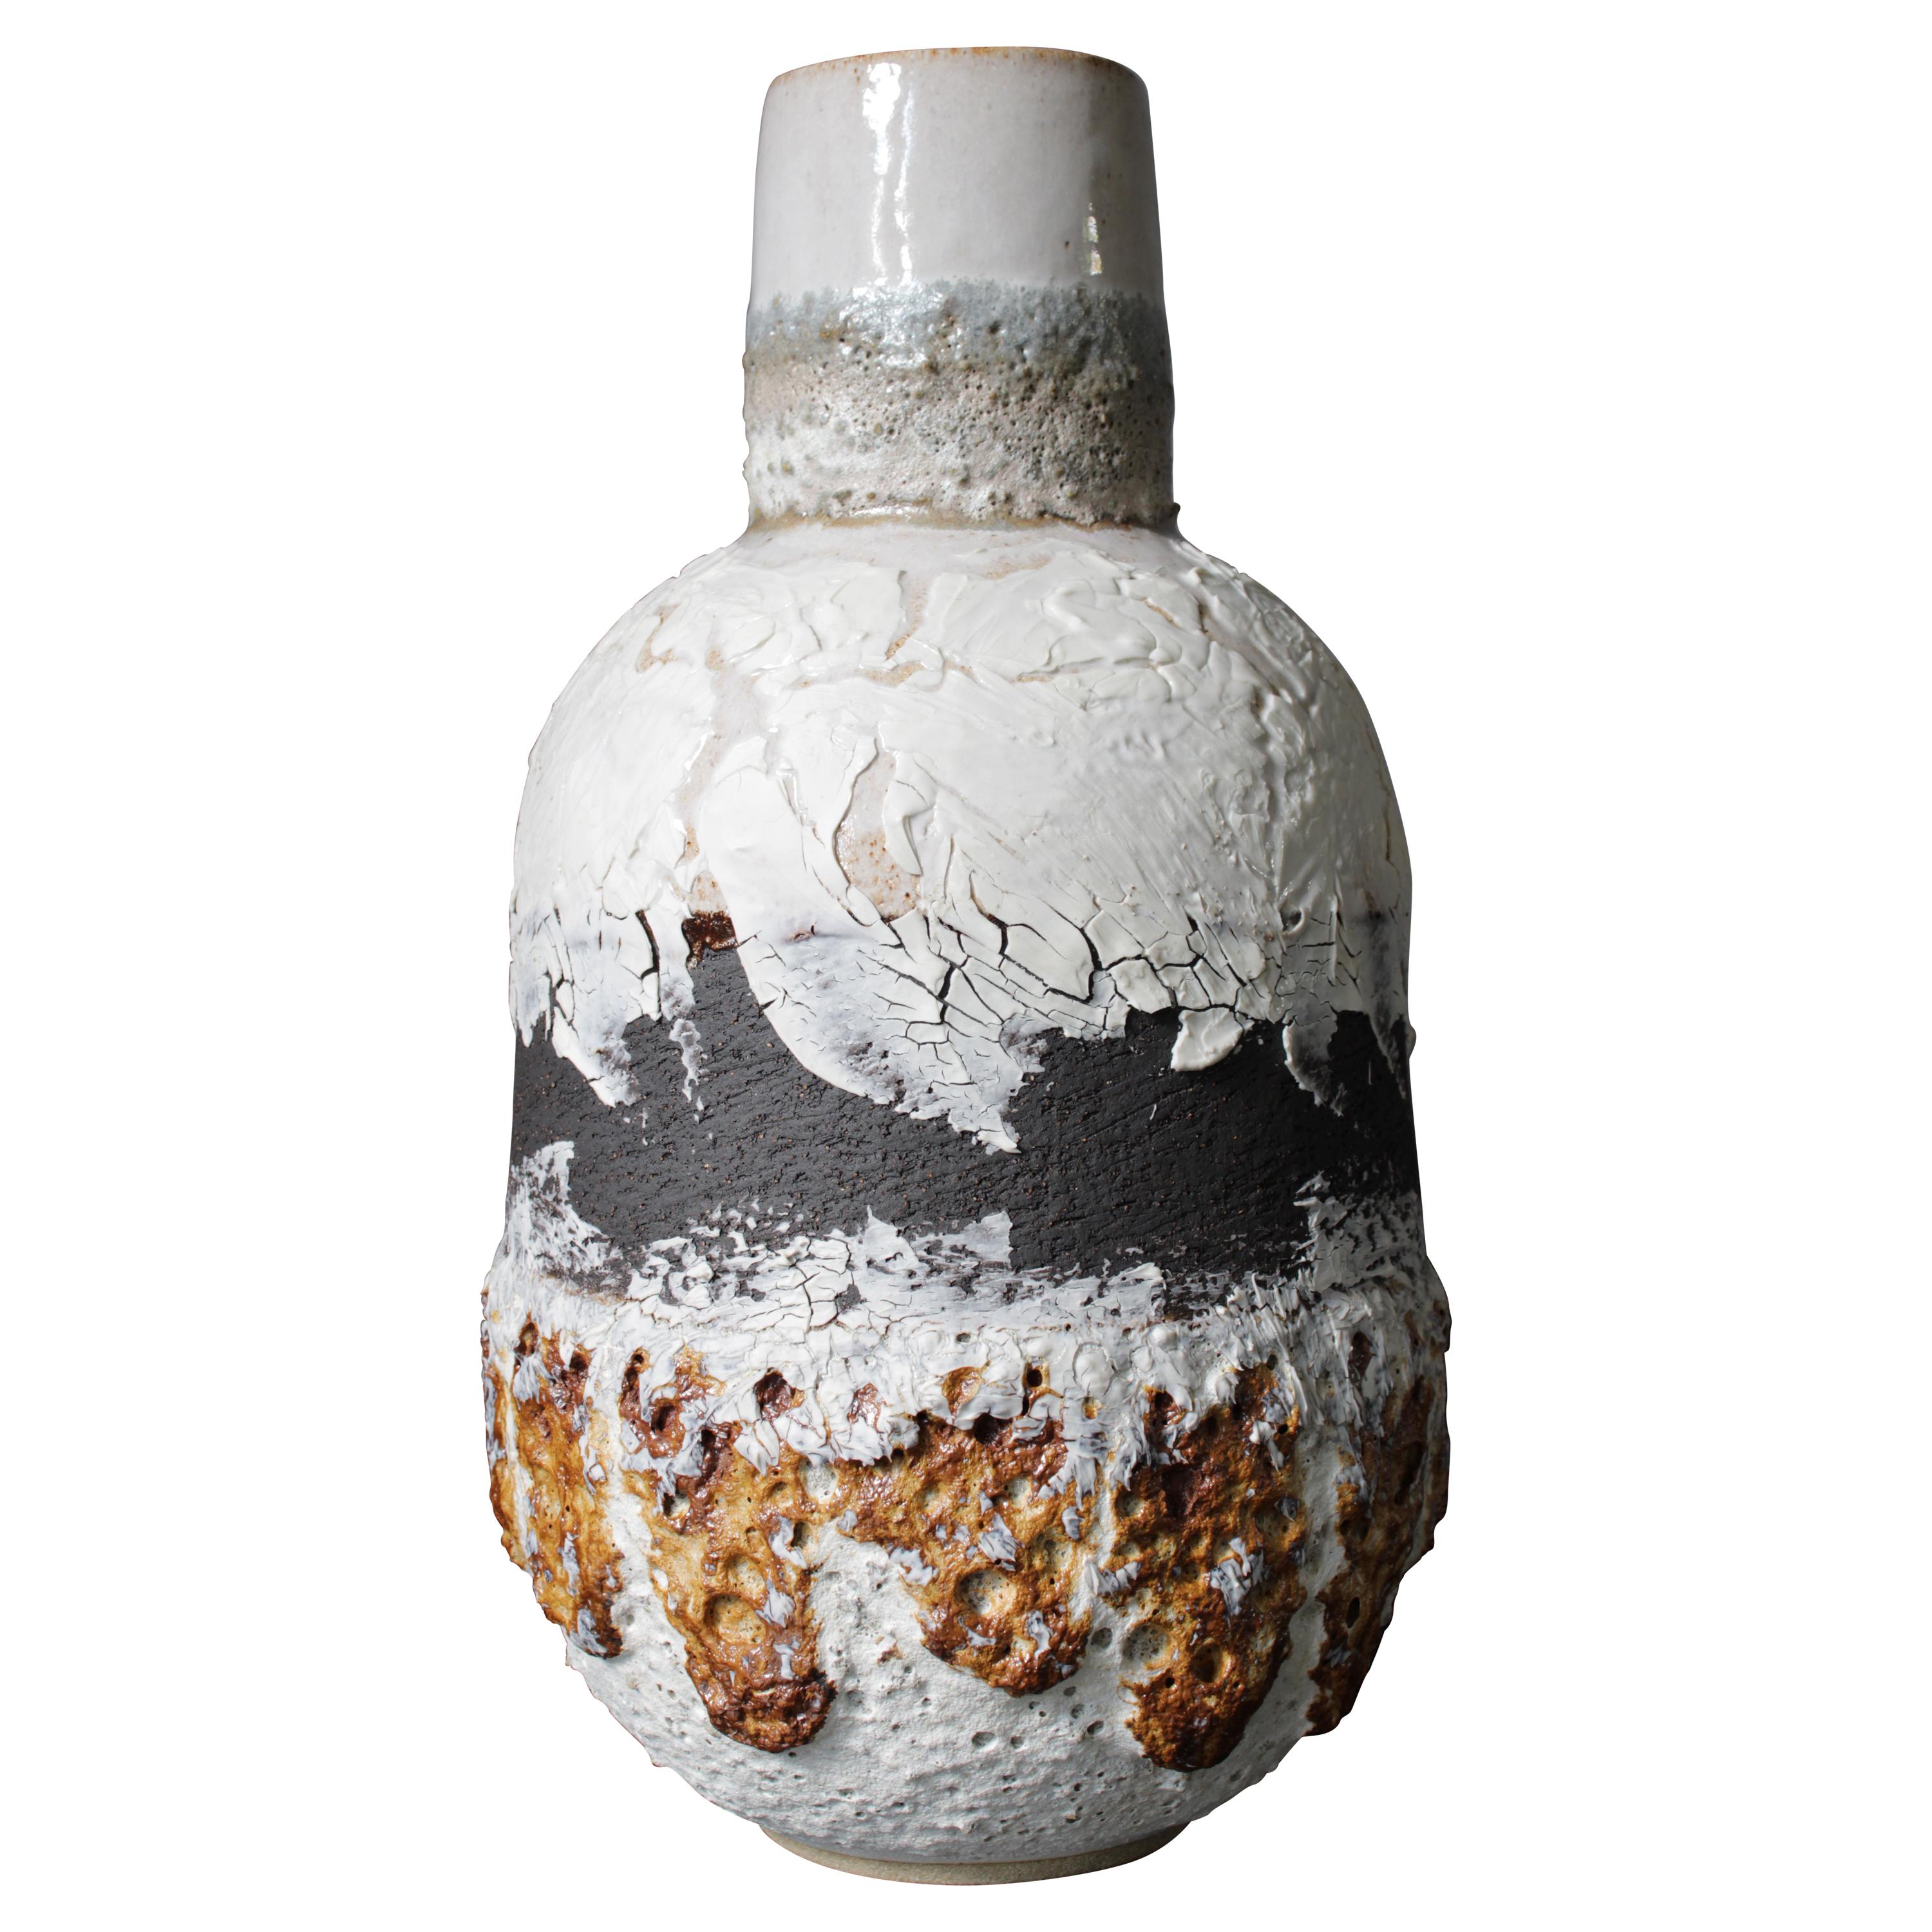 Großes Vasengefäß aus weißem und schwarzem Vulkangestein und Porzellan mit Lavastein